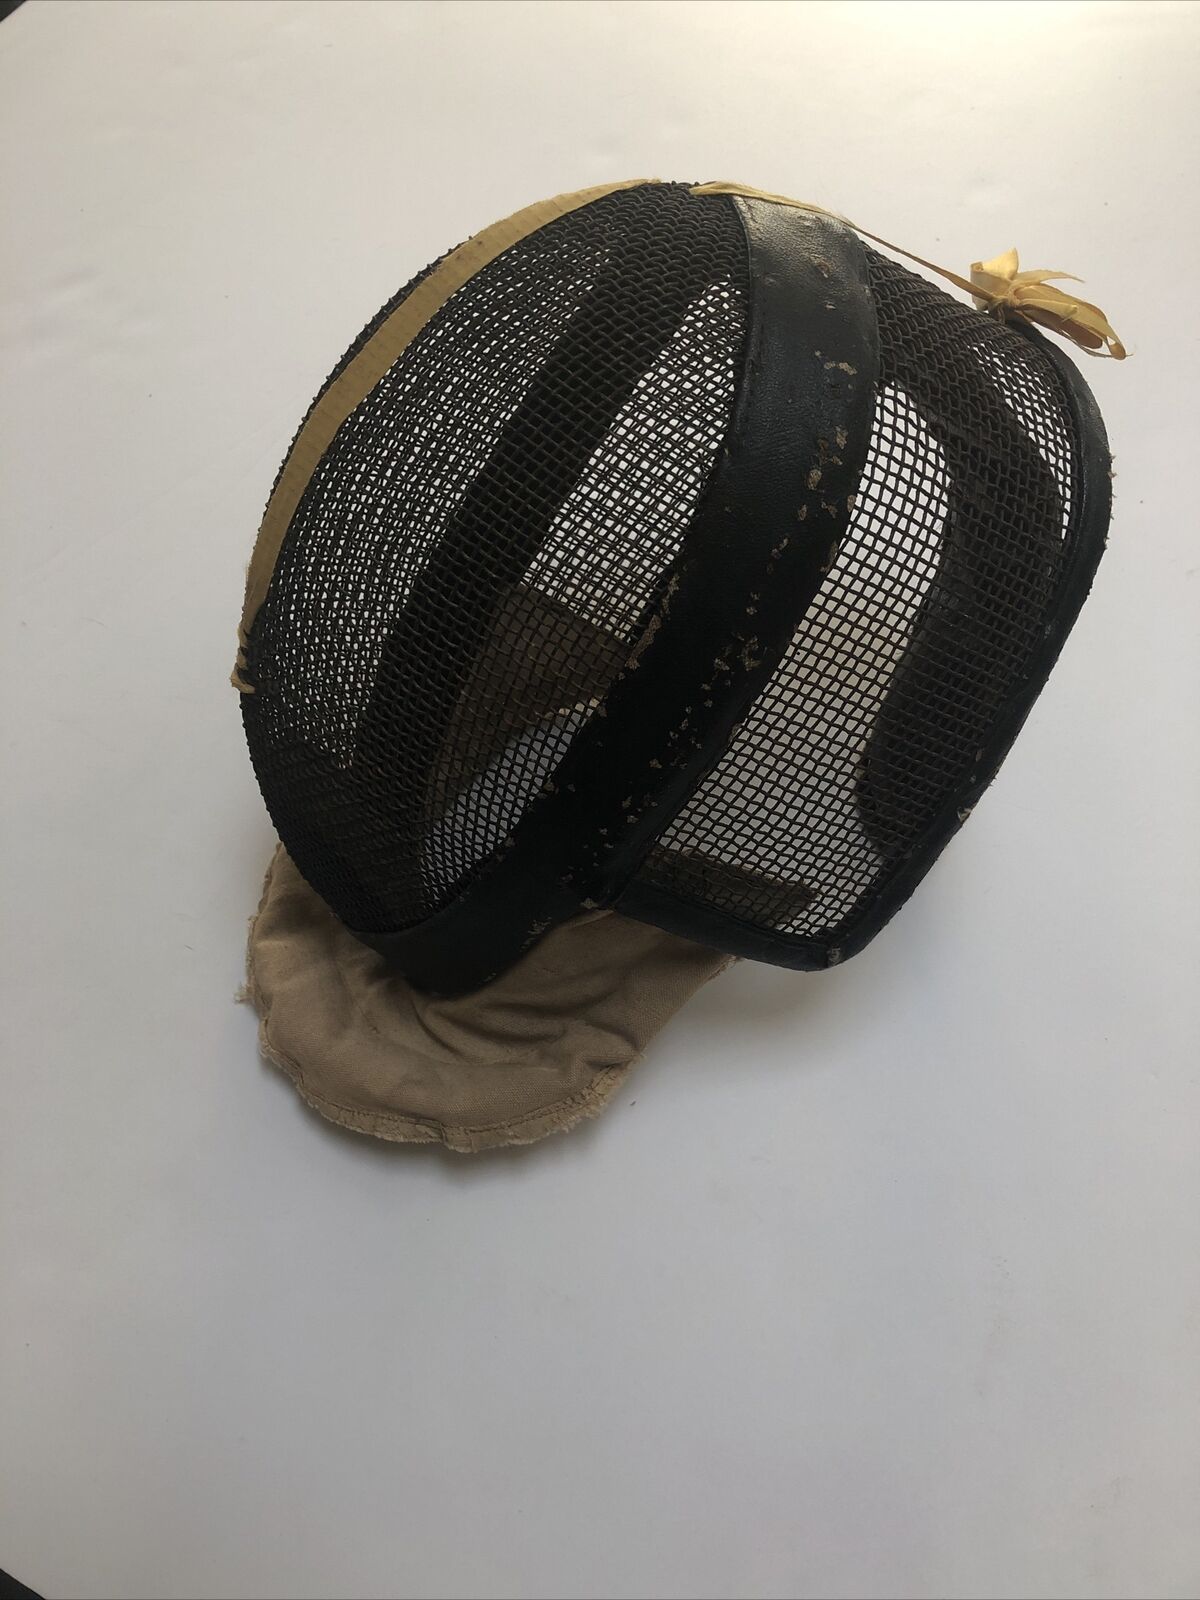 Vintage Antique 1900s Saber And Fencing Mask Helmet - RARE